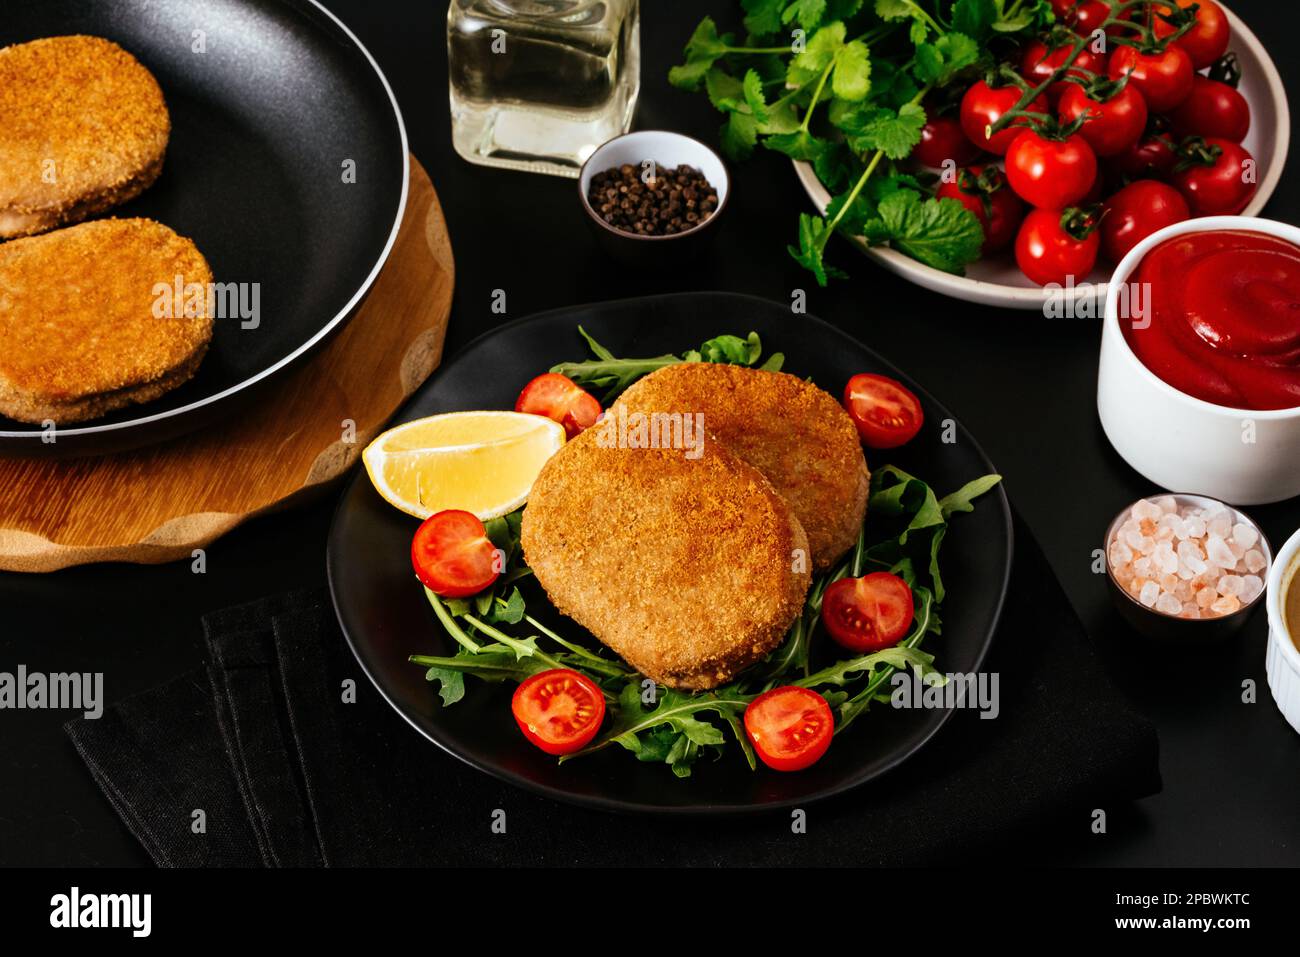 escalope de poulet sur une assiette noire. légumes et herbes. bac noir Banque D'Images